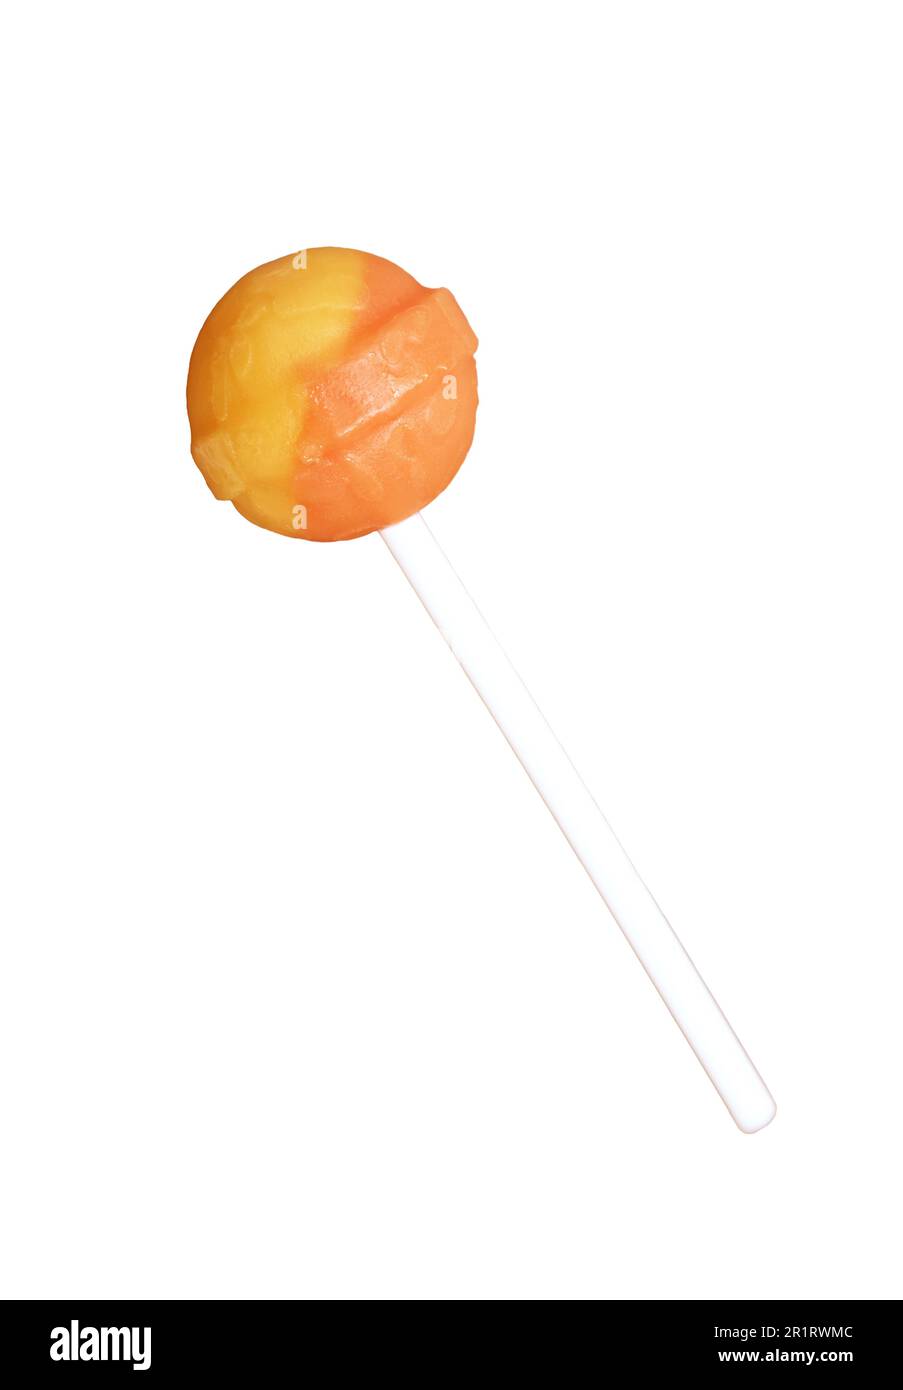 Orange and Lemon Lollipop Candy Isolated on White Background Stock Photo